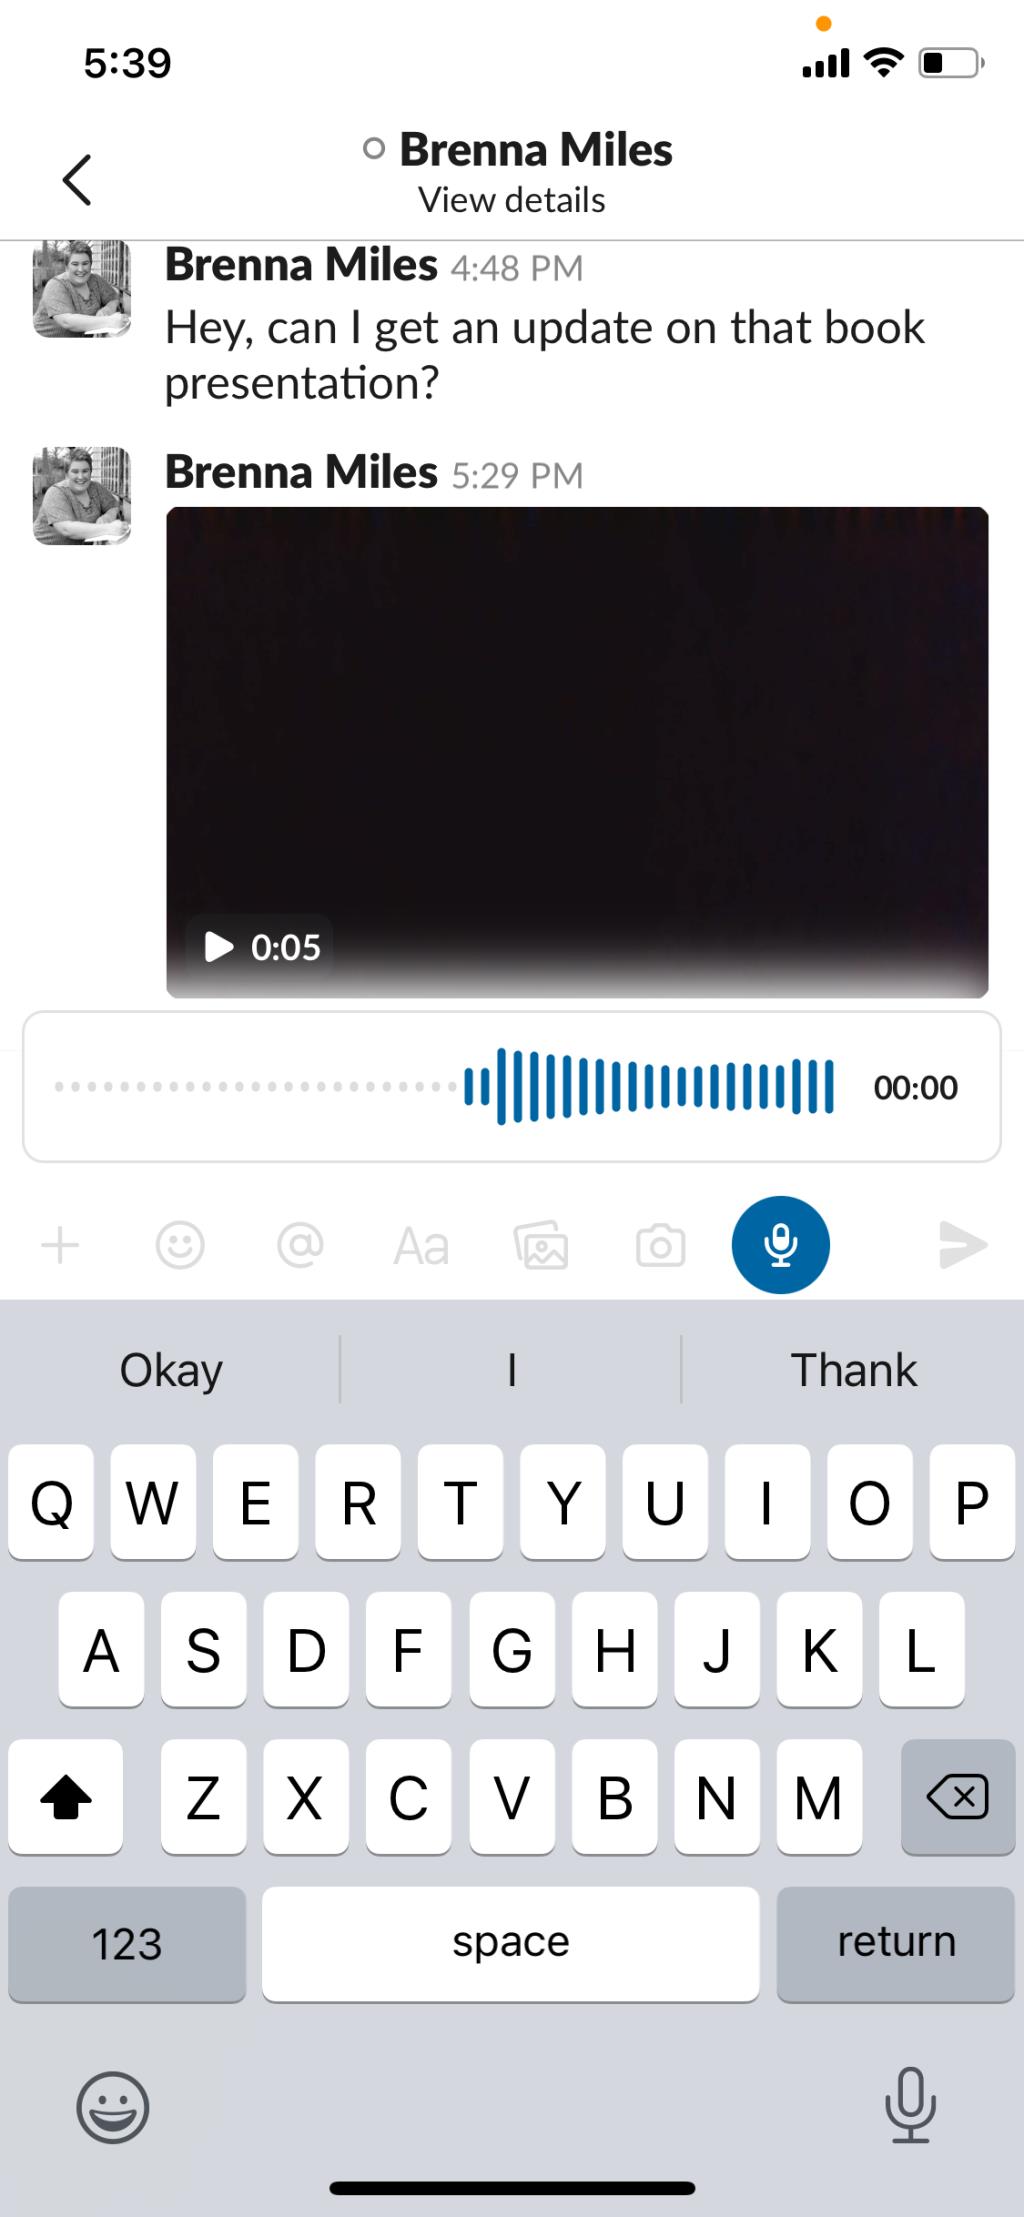 Comment utiliser Slack Clips pour communiquer rapidement et facilement avec des collègues